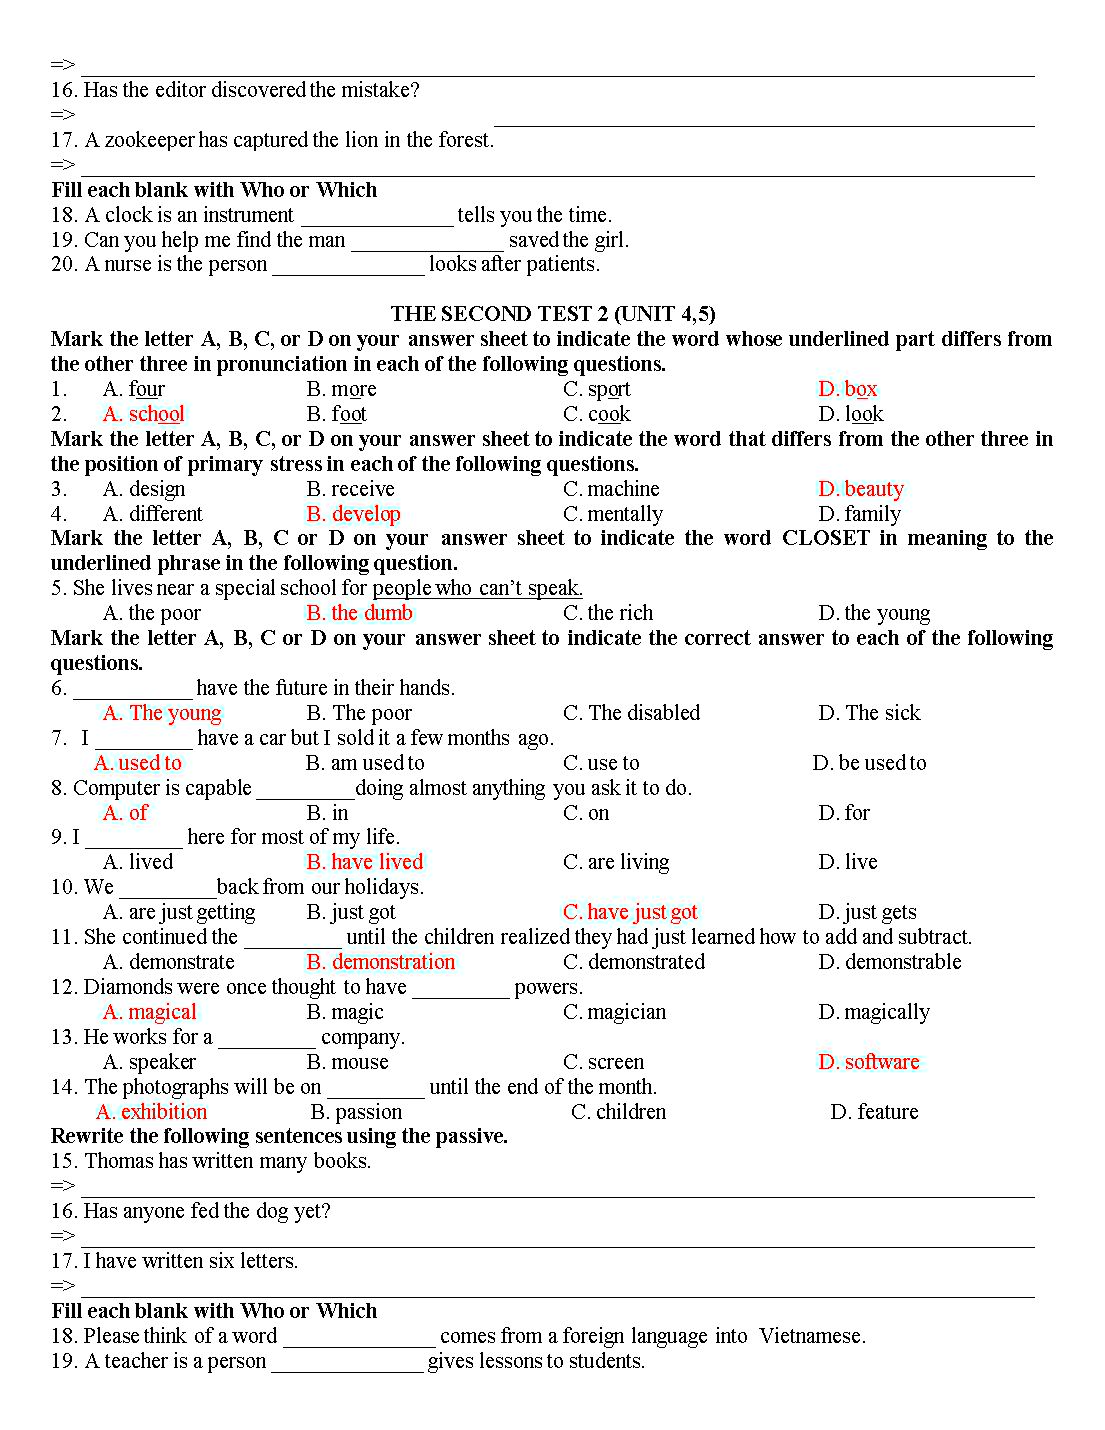 Tổng hợp đề kiểm tra 15 phút tiếng Anh lớp 10 trang 4